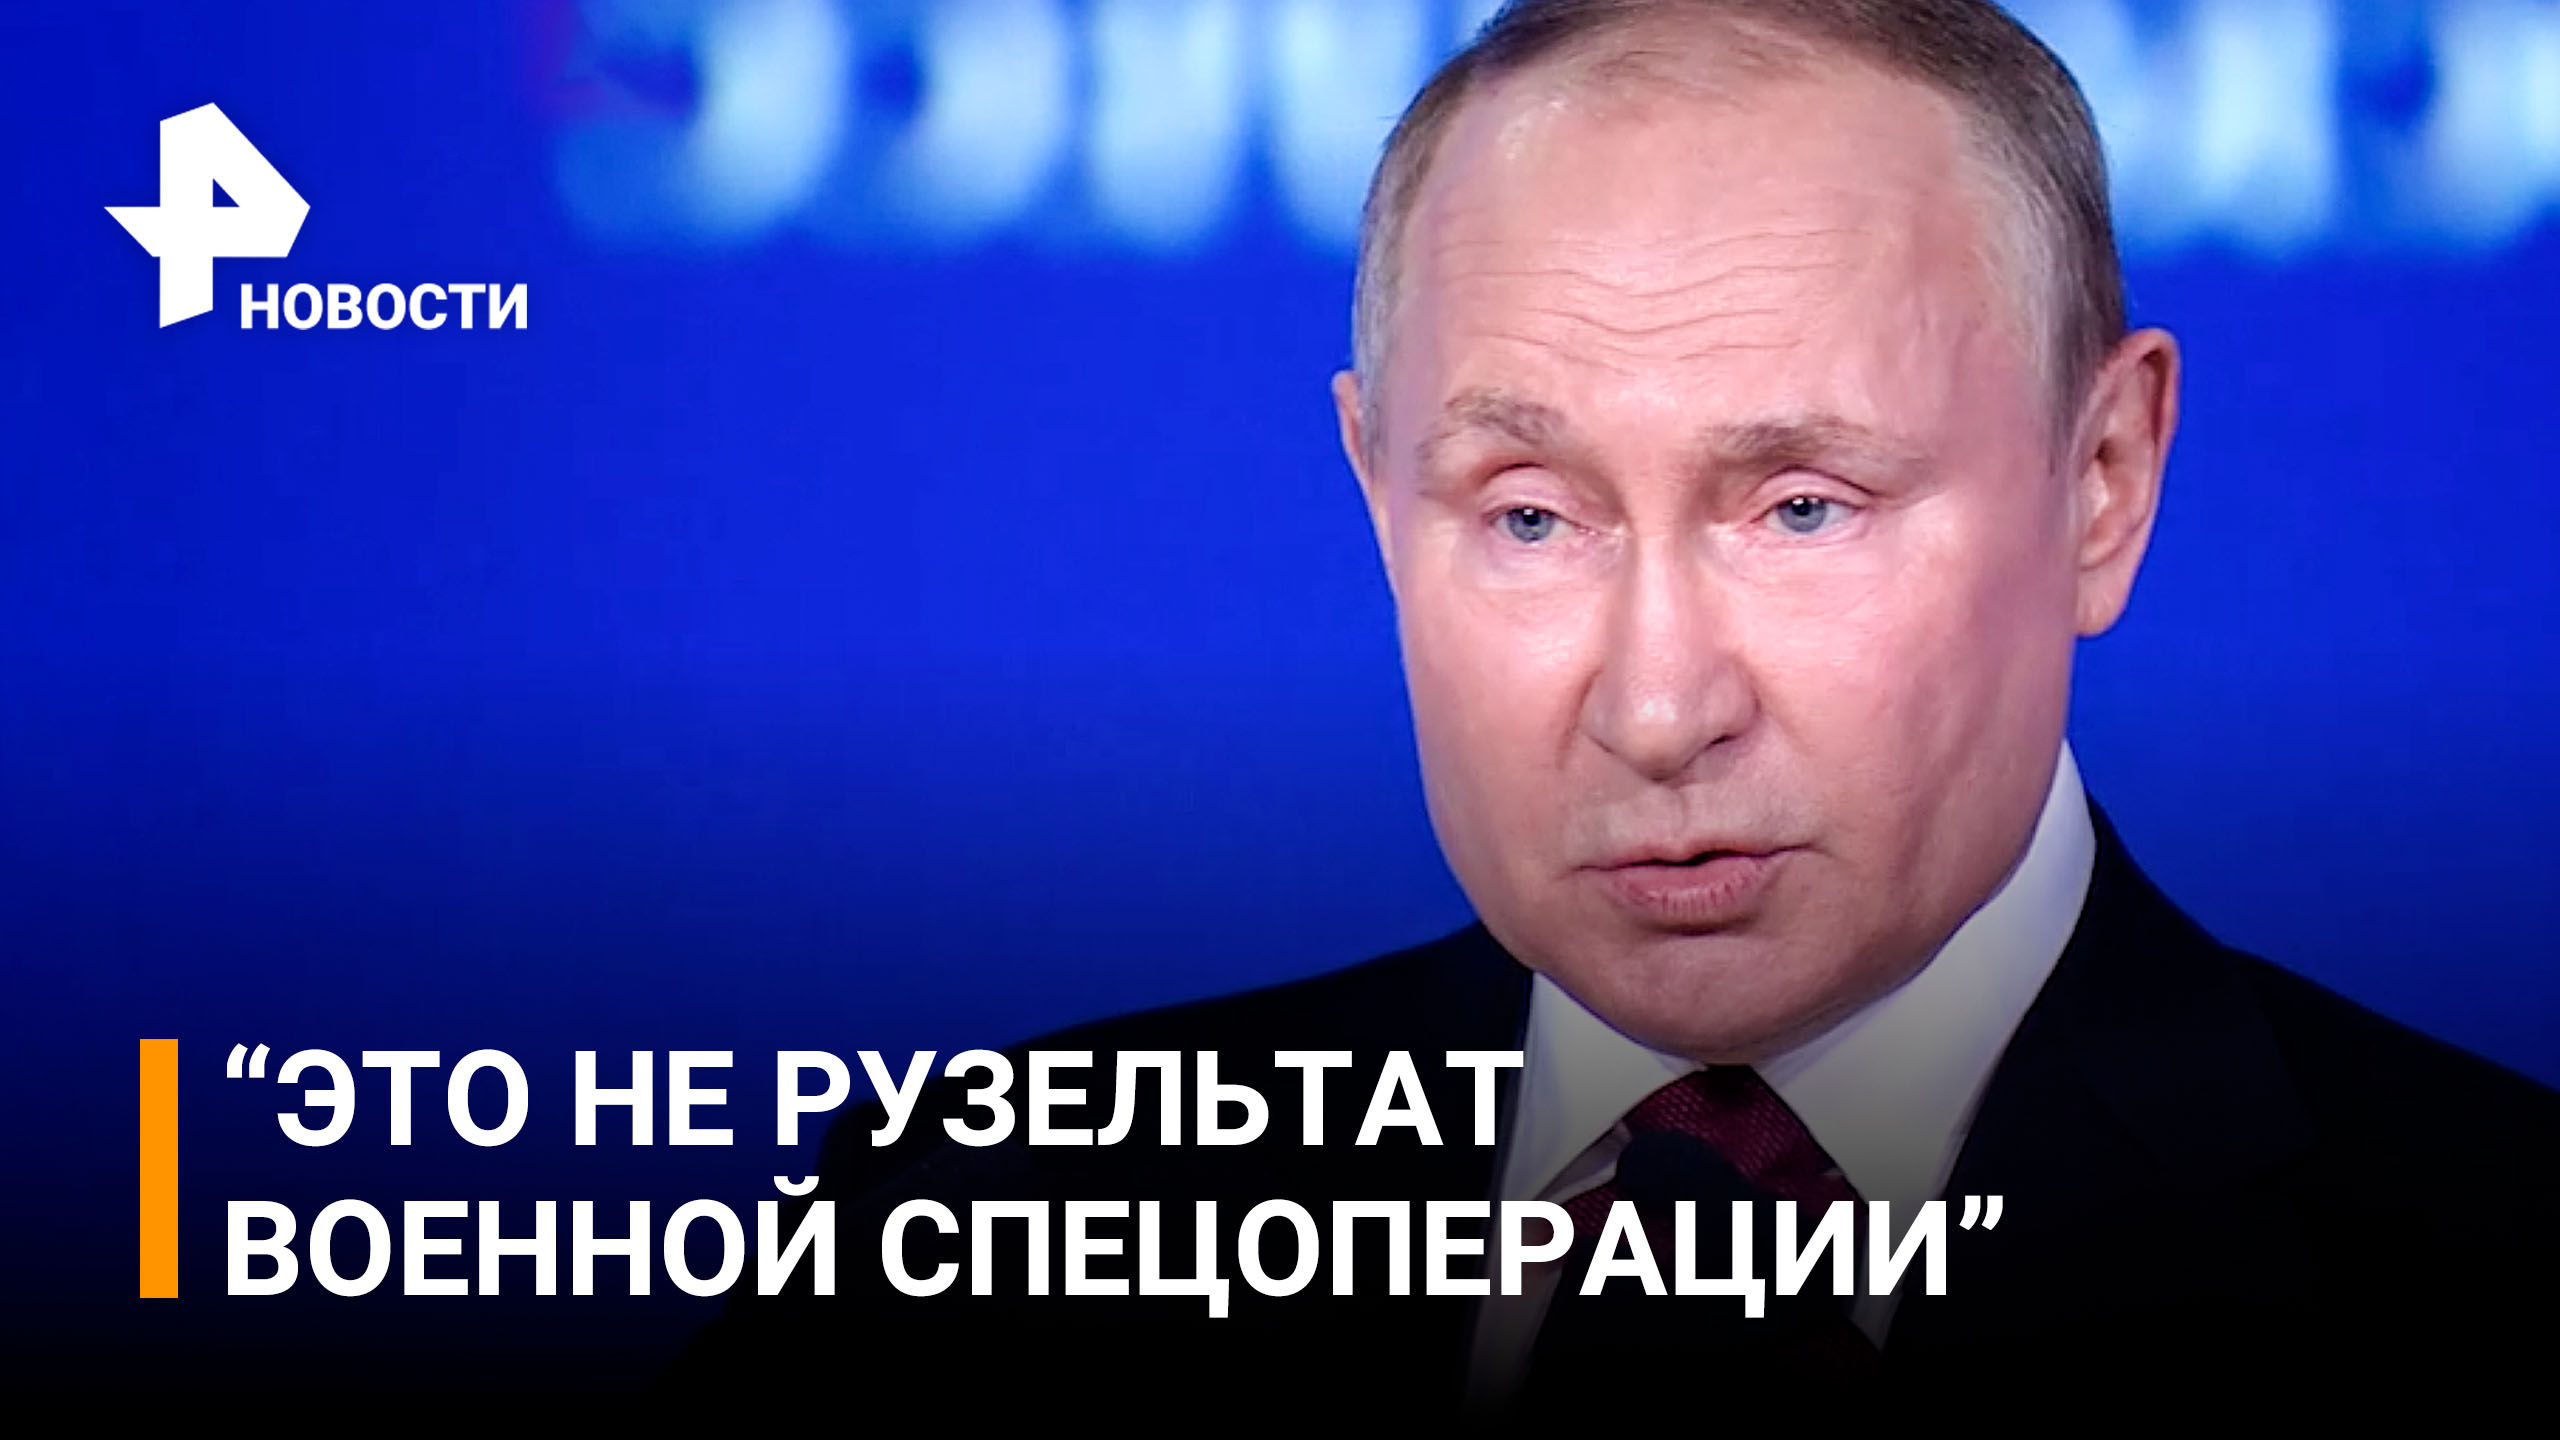 «ЕС ждет деградация и смена элит»: Путин об изменениях в Европе / РЕН Новости